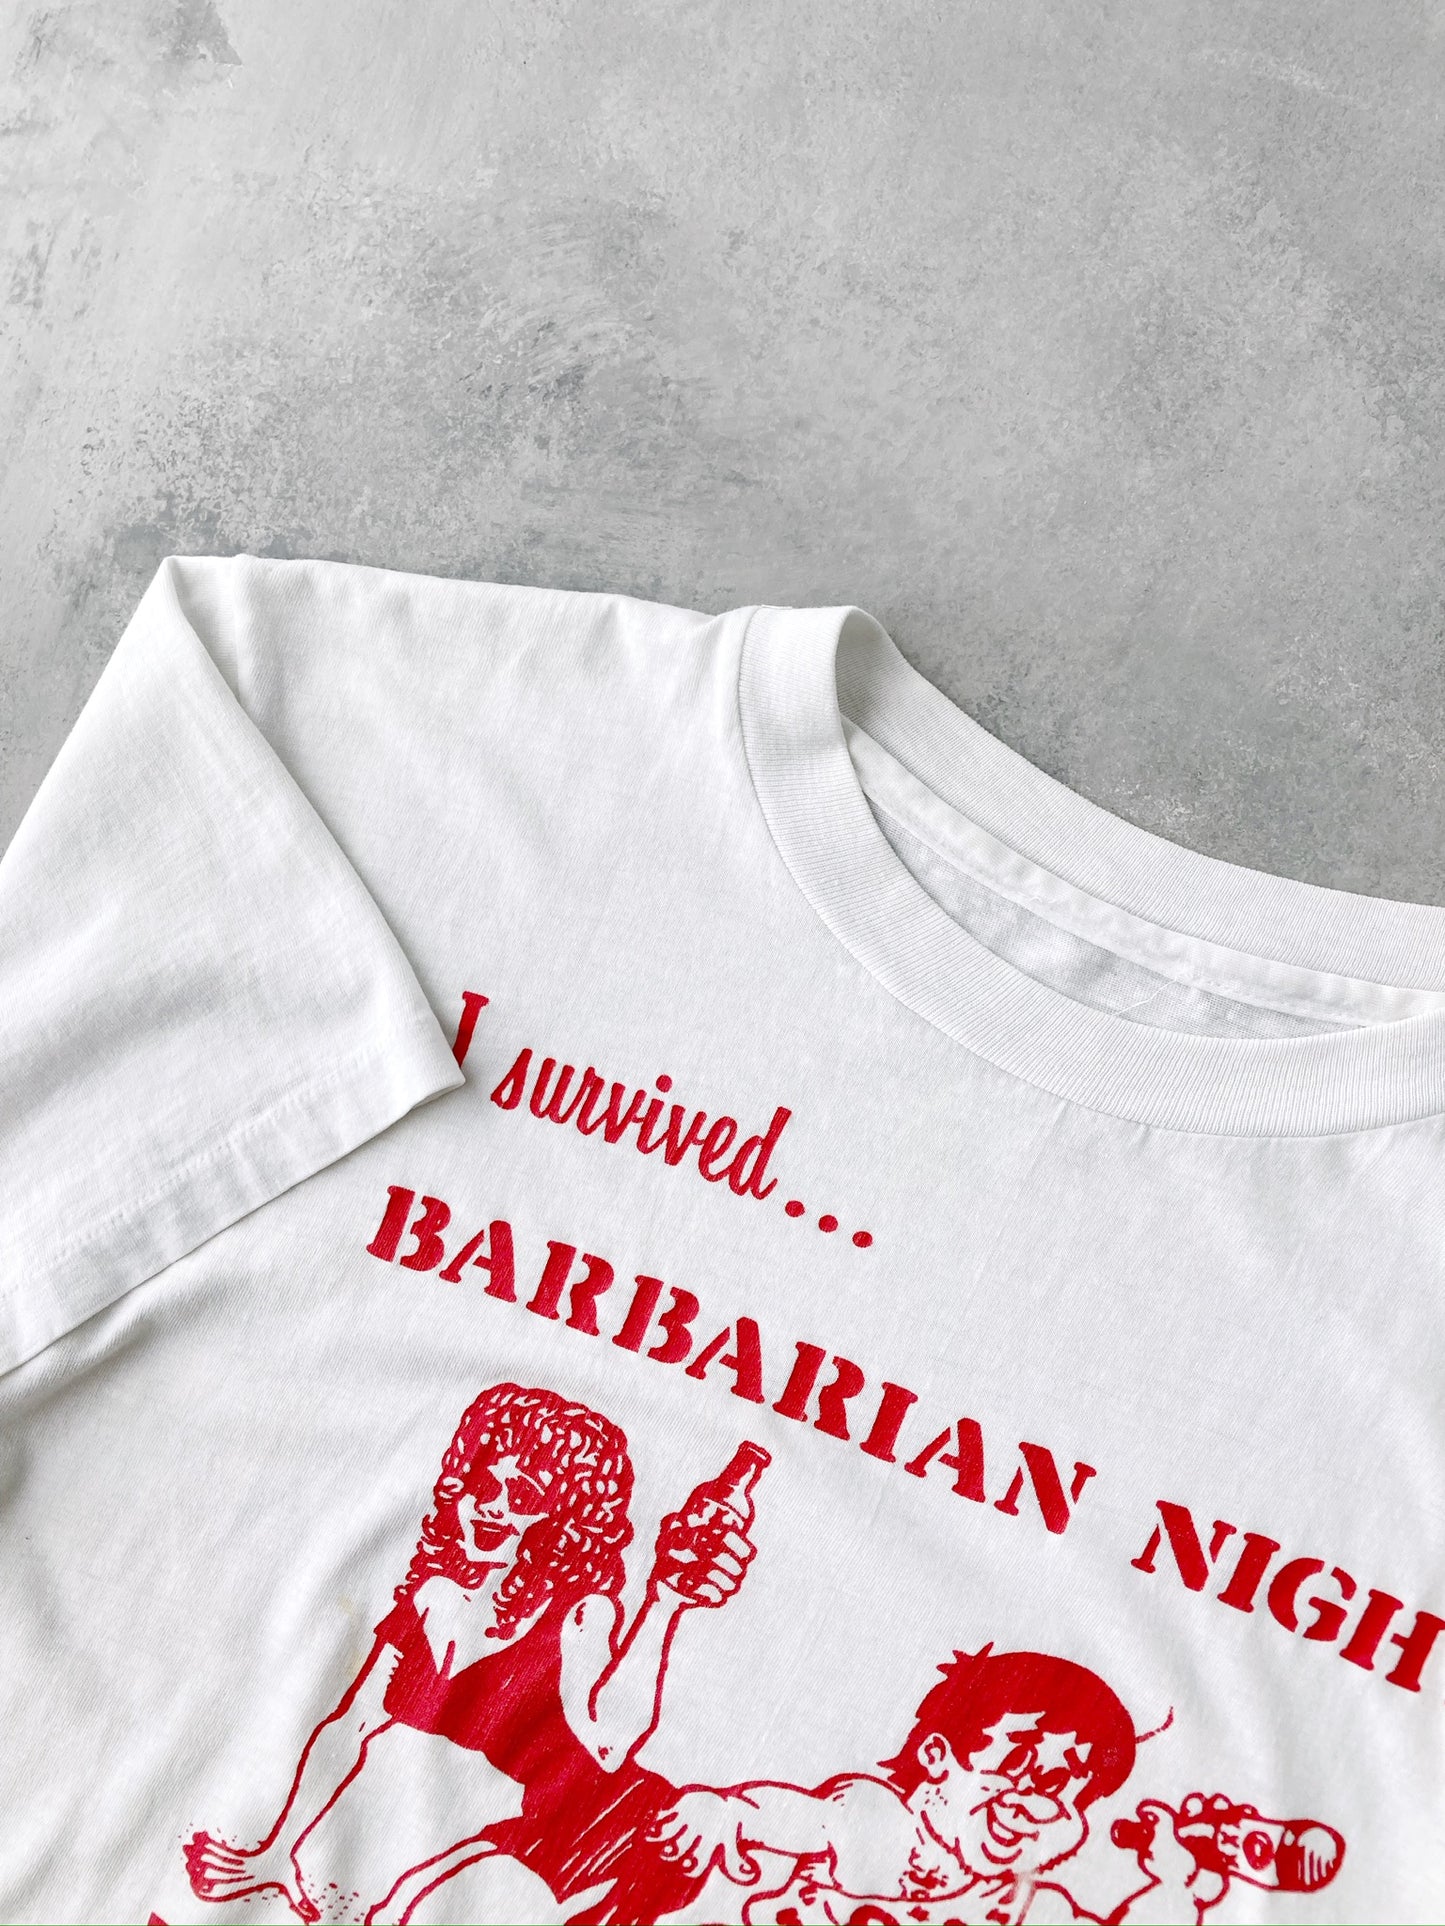 Theta Chi Barbarian Night T-Shirt '86 - Medium